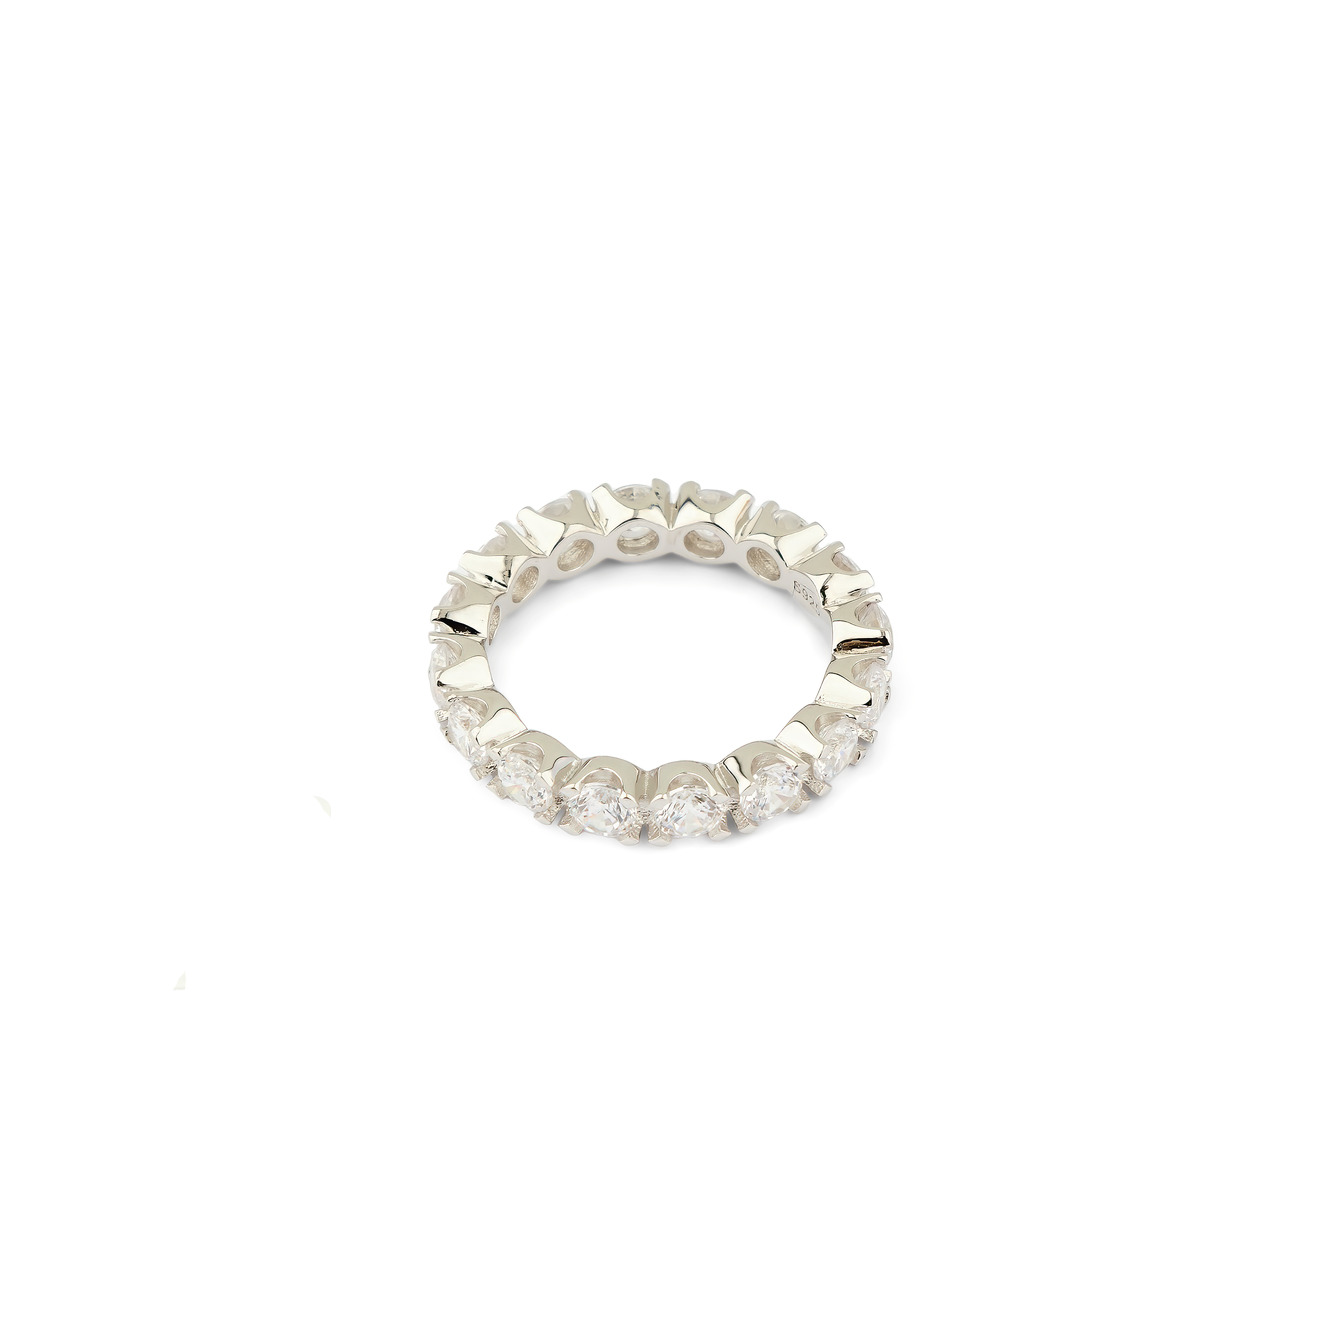 Holy Silver Тонкое кольцо из серебра с дорожкой из белых кристаллов фото